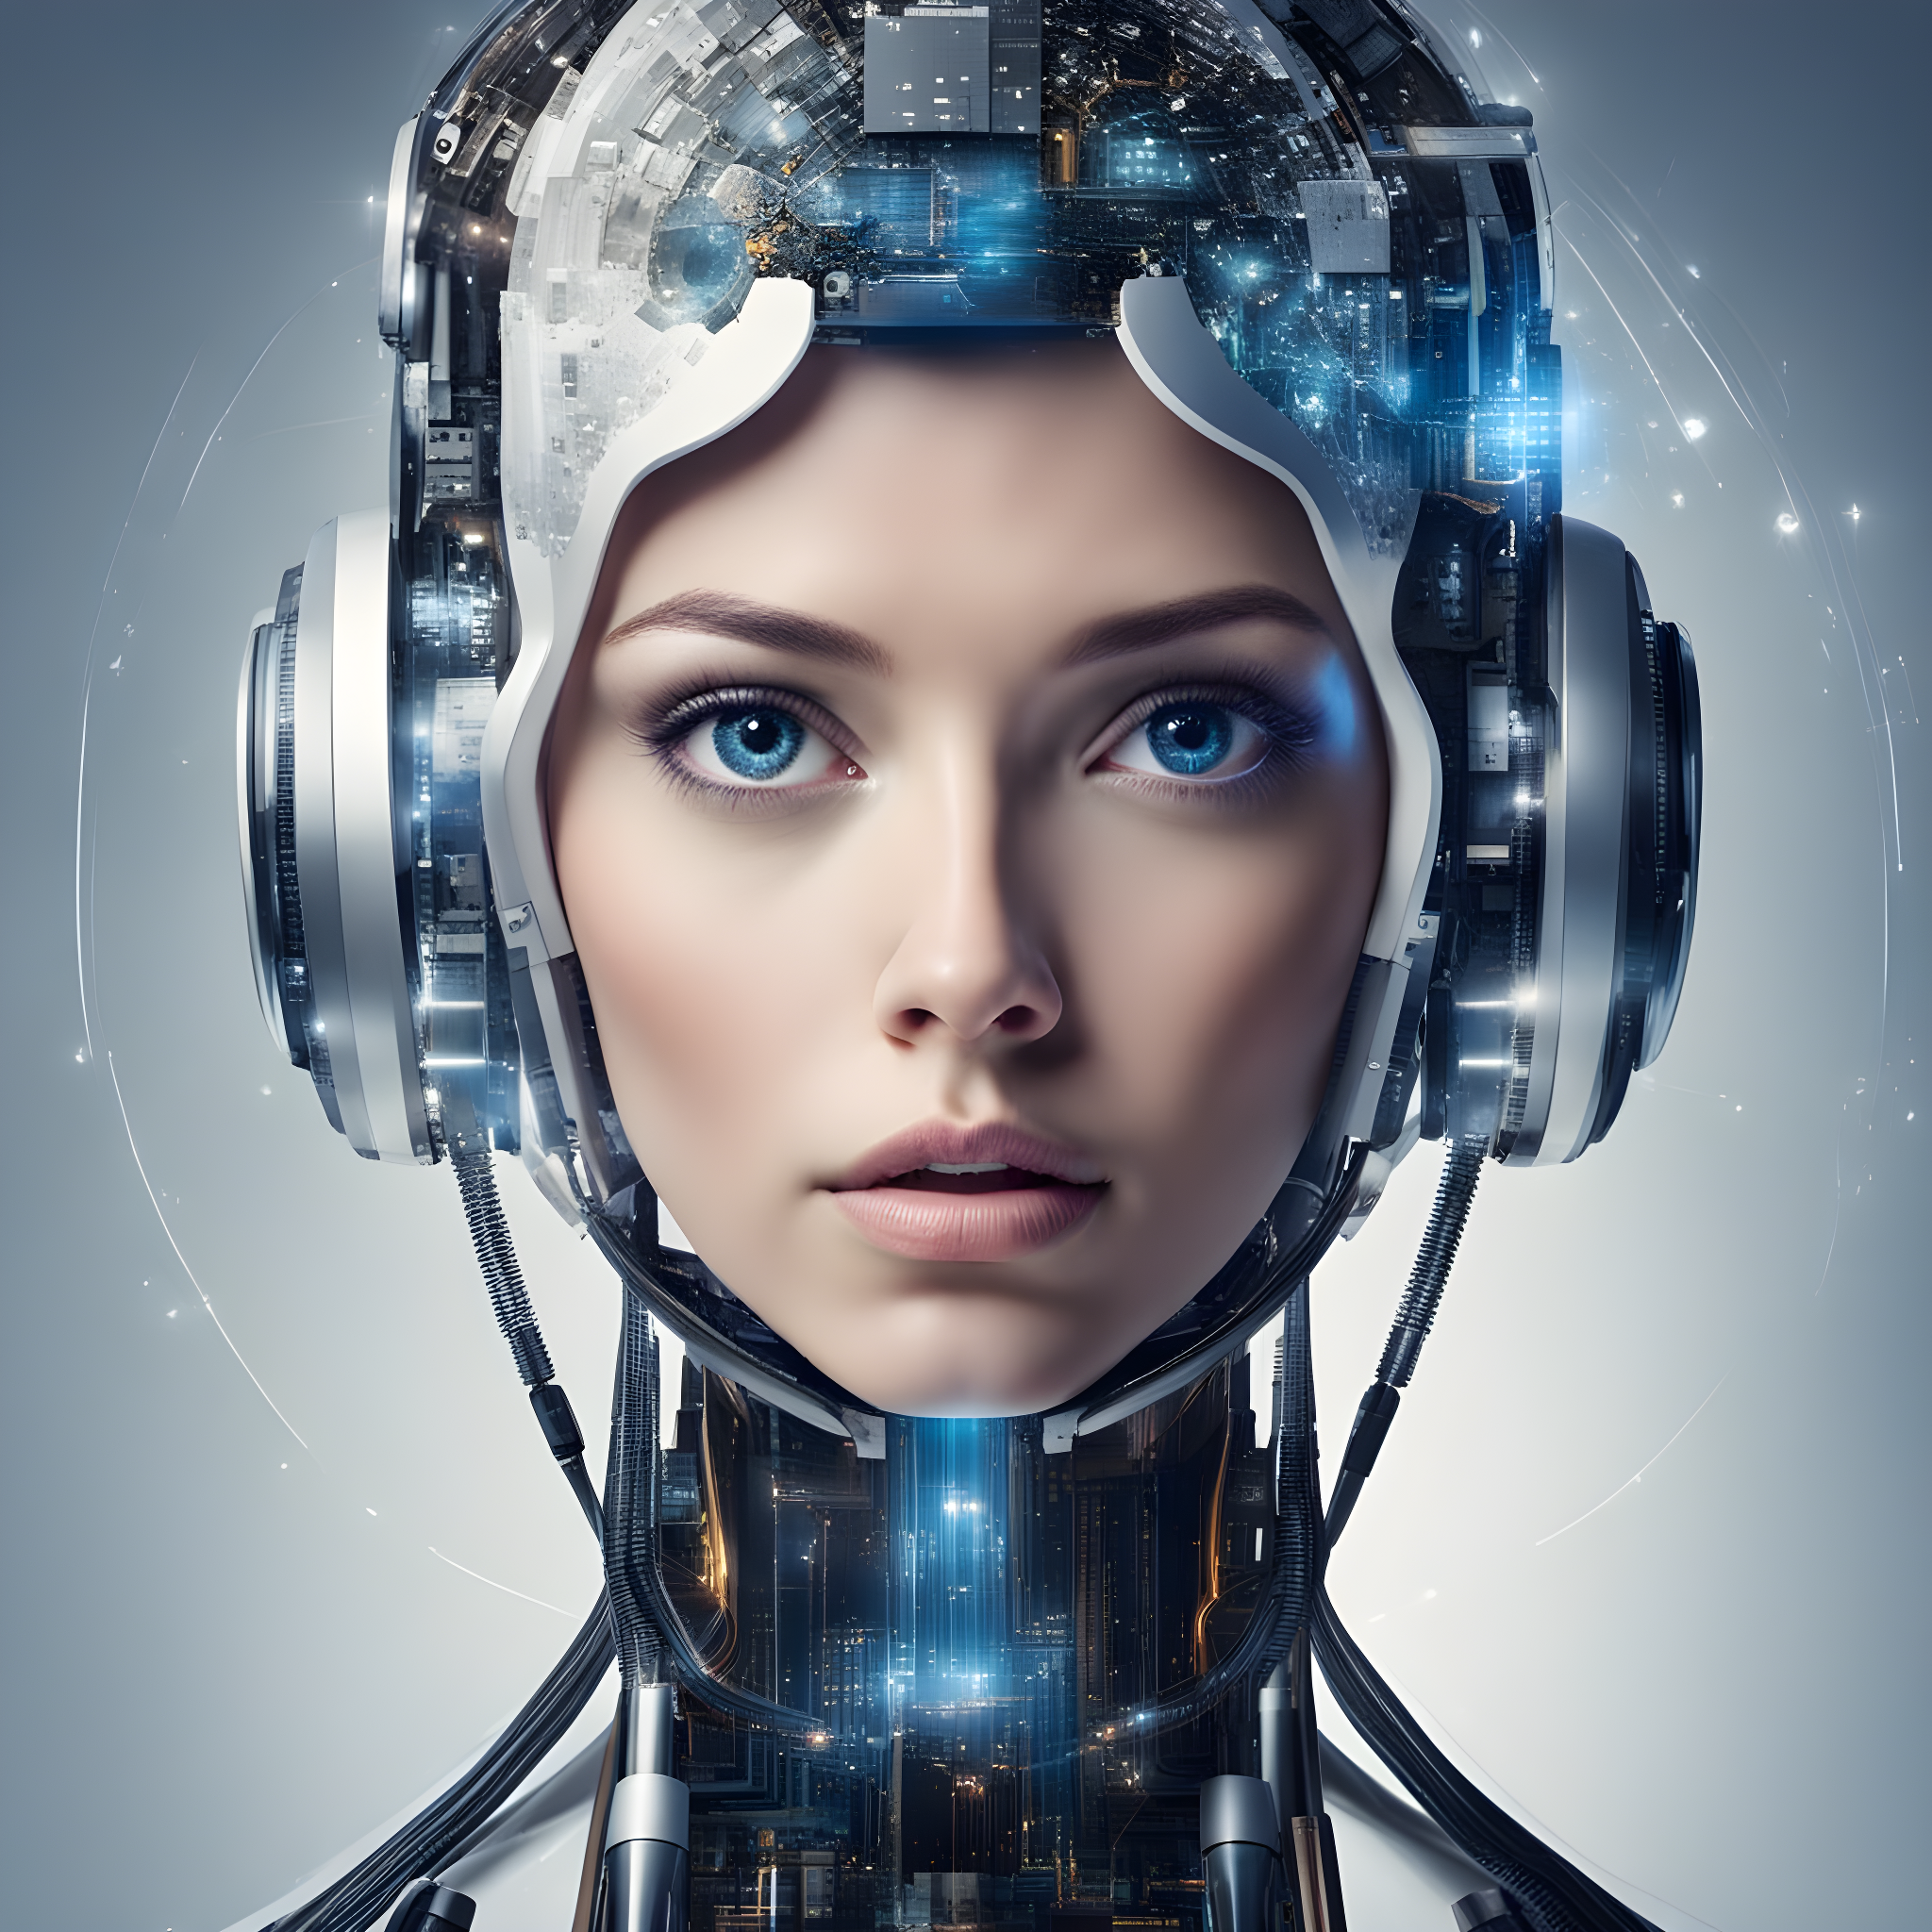 Un robot con cara humana generado con IA